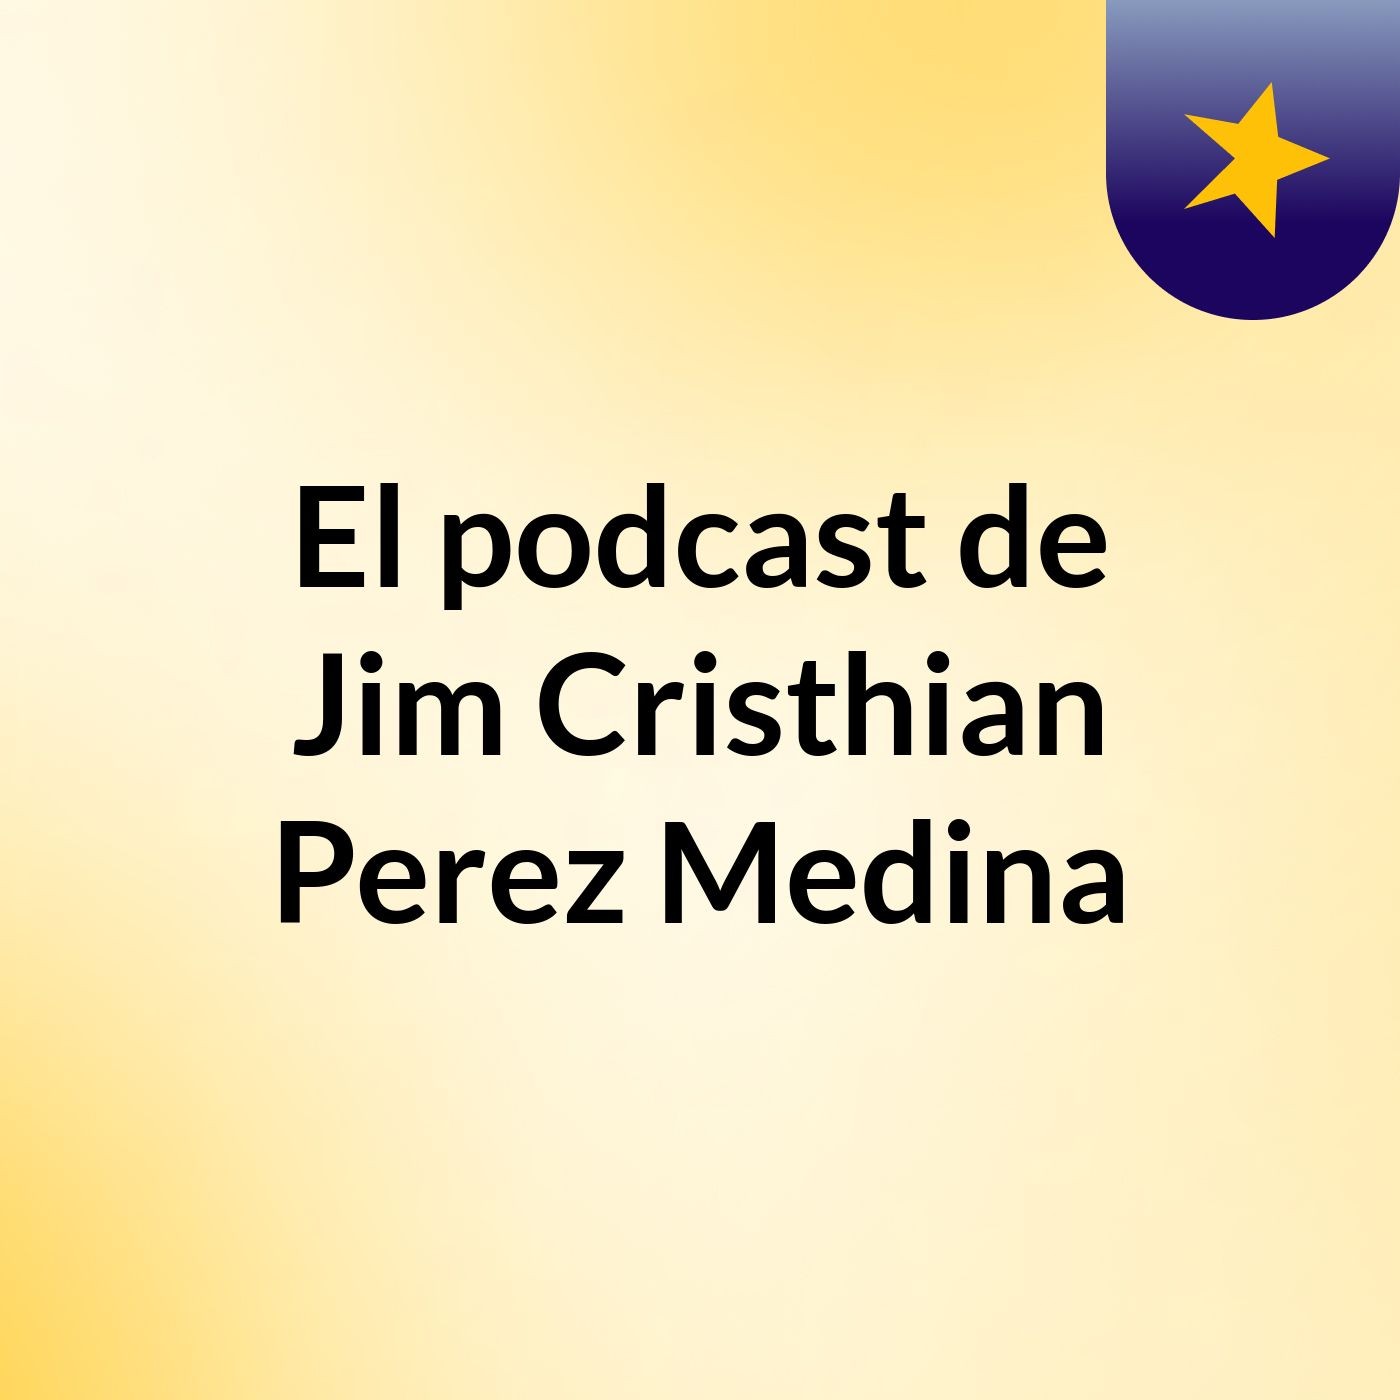 El podcast de Jim Cristhian Perez Medina